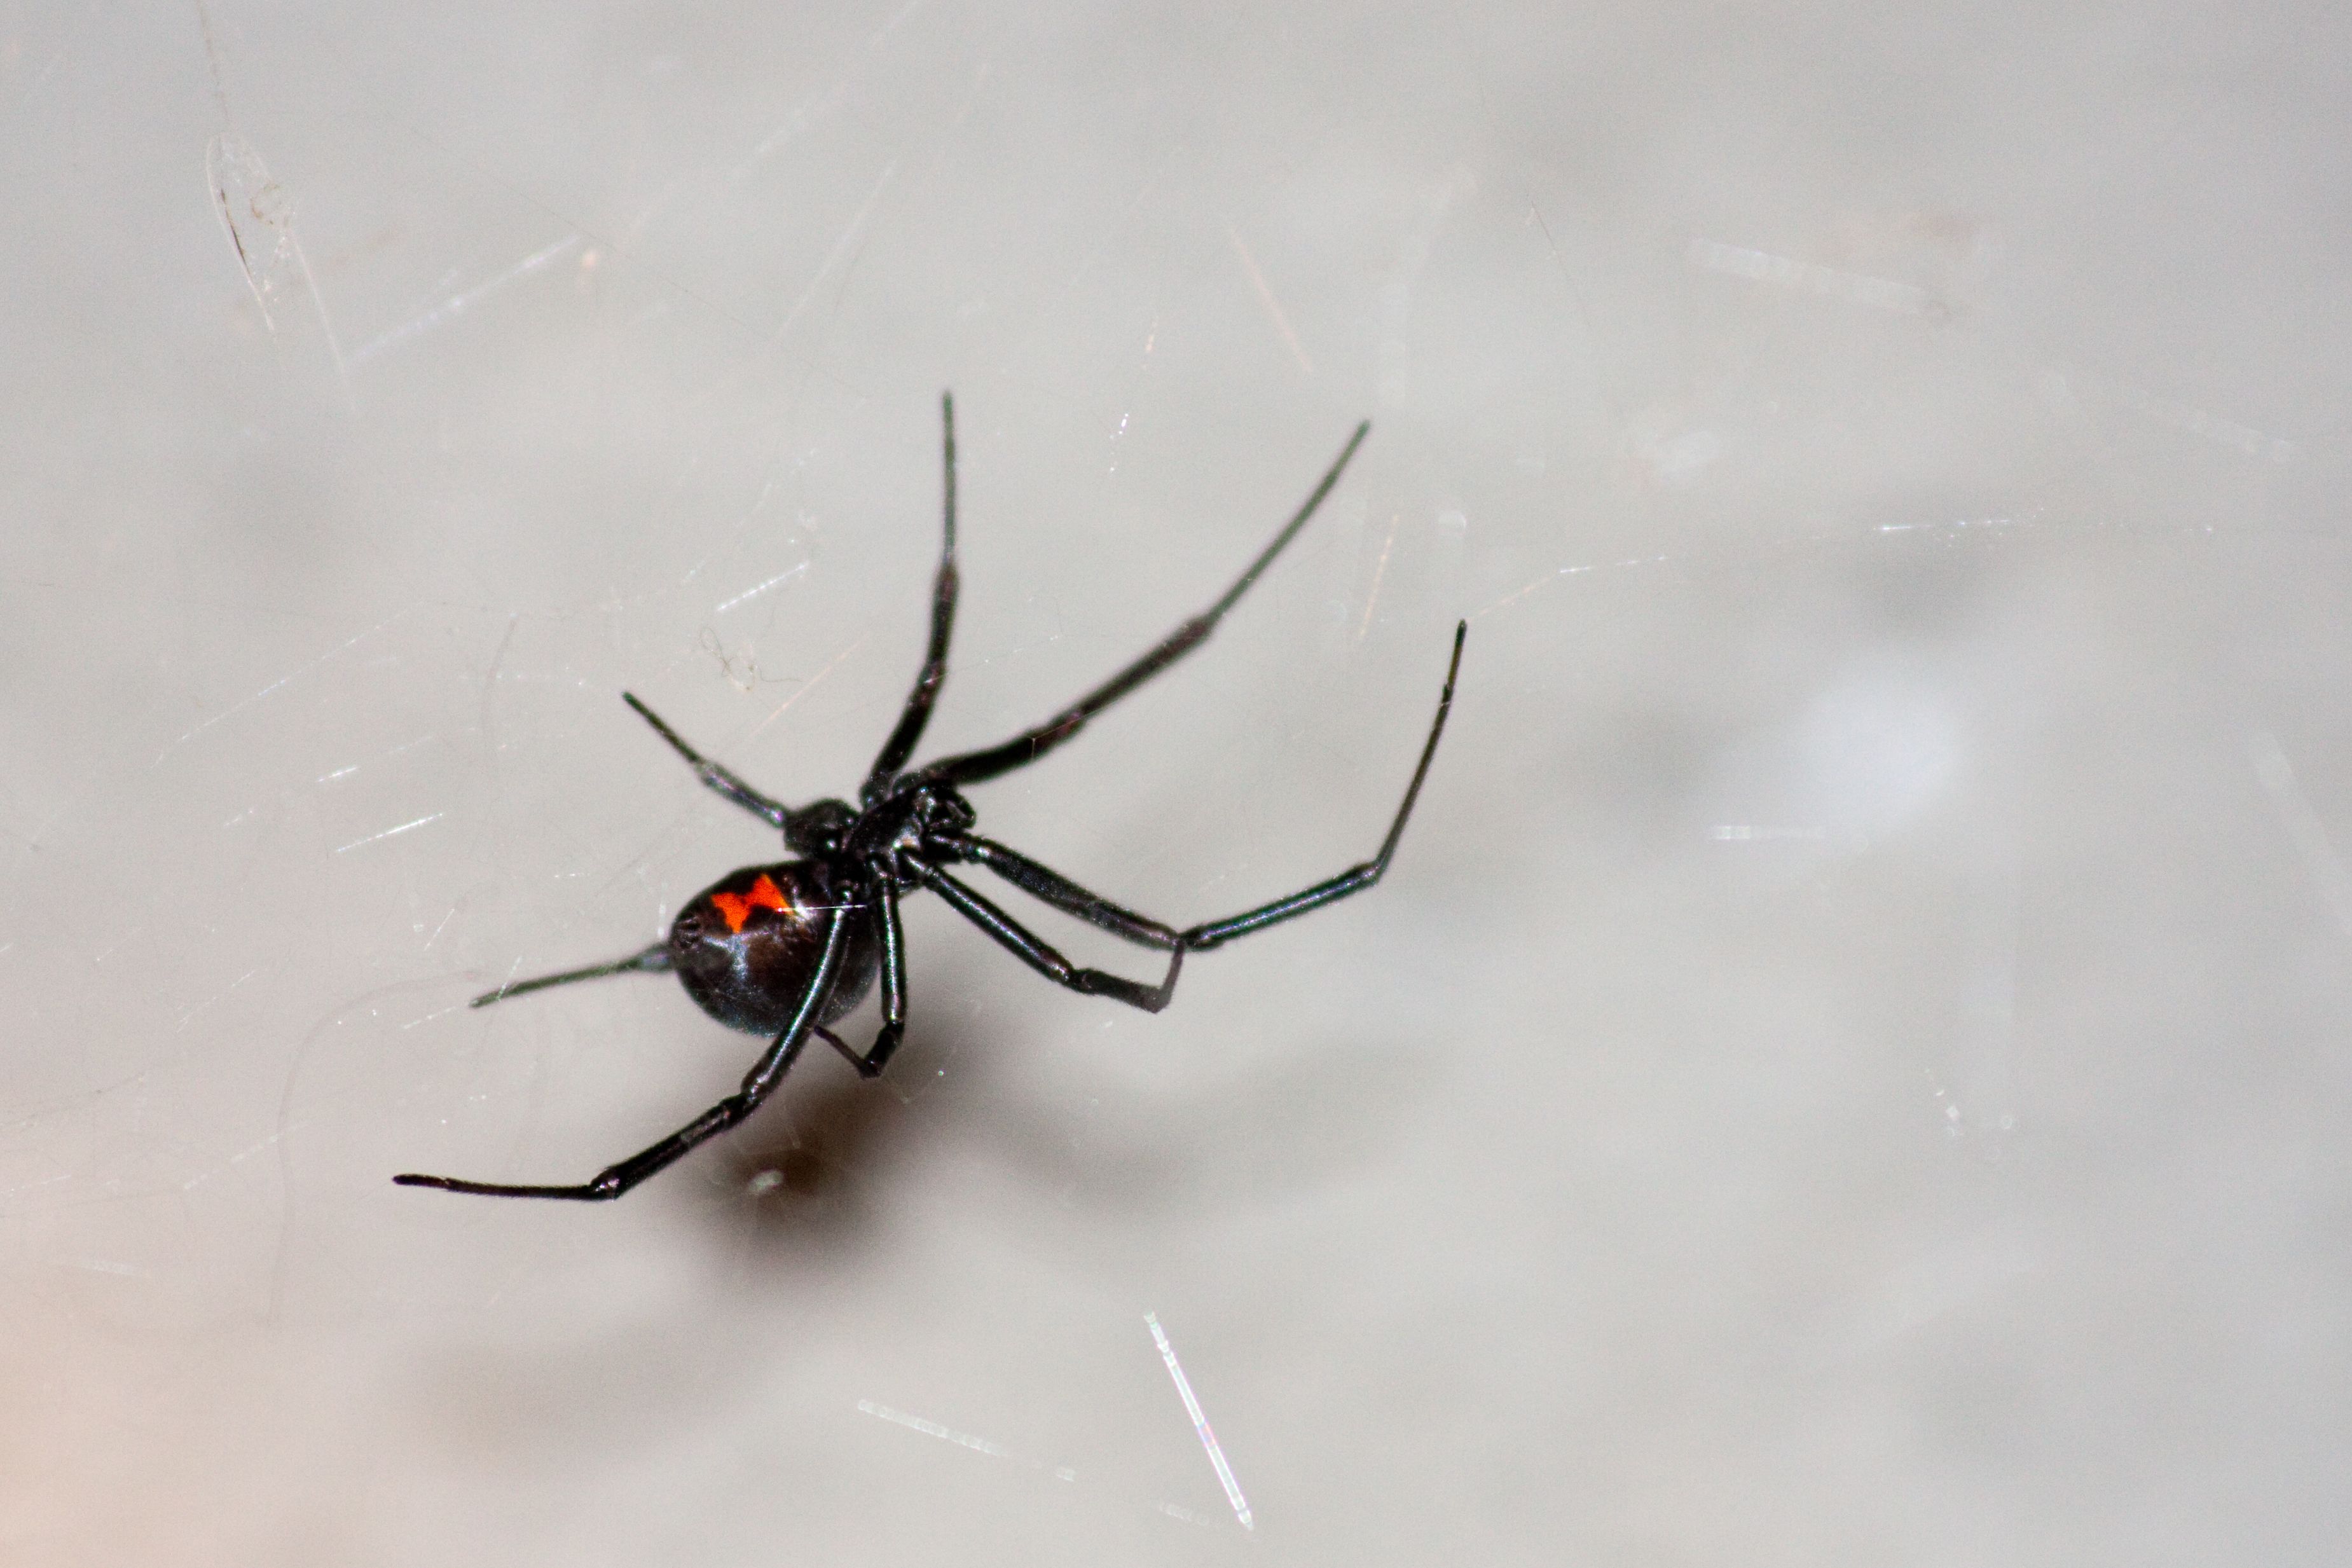 Black Widow Spider Facts, Black Widow Spider Control